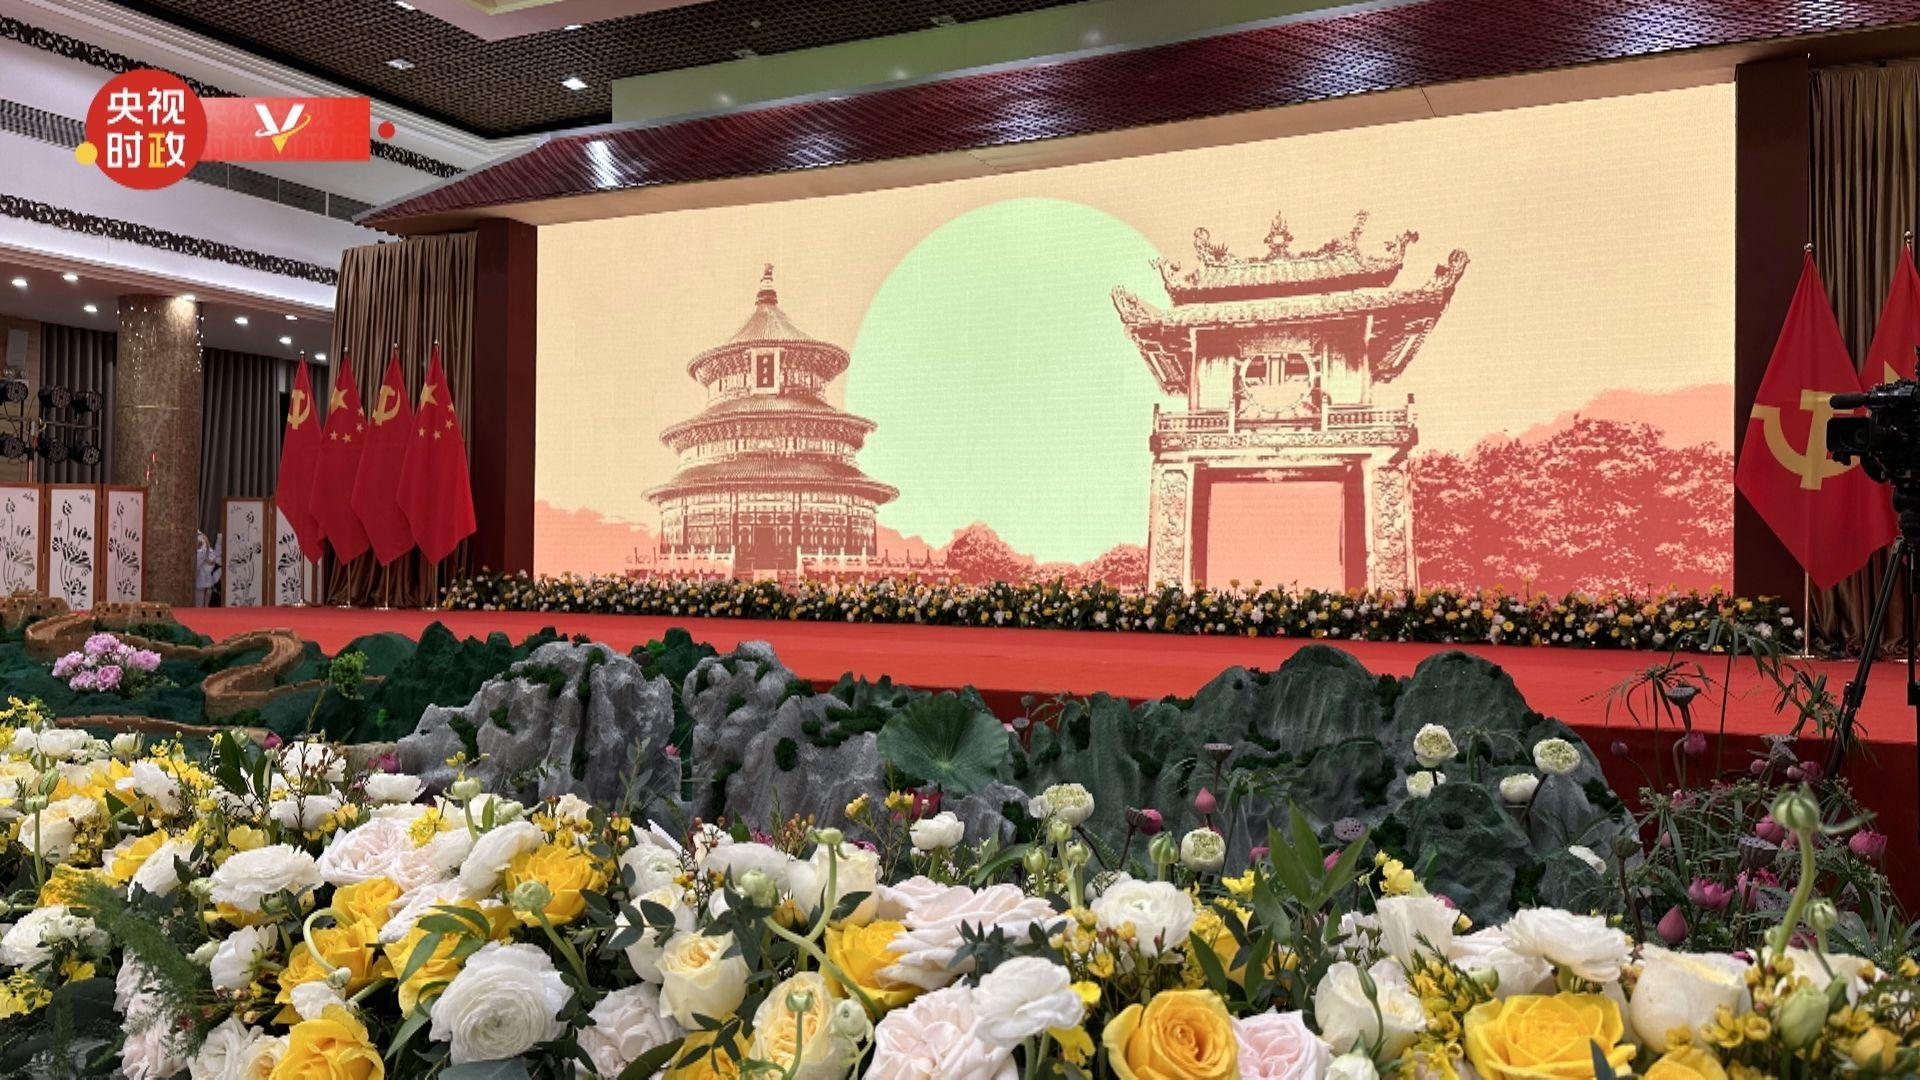 सी चिनफिङ र फङ लीयुआन भियतनामी नेता दम्पतिद्वारा आयोजित स्वागत भोजमा सहभागी